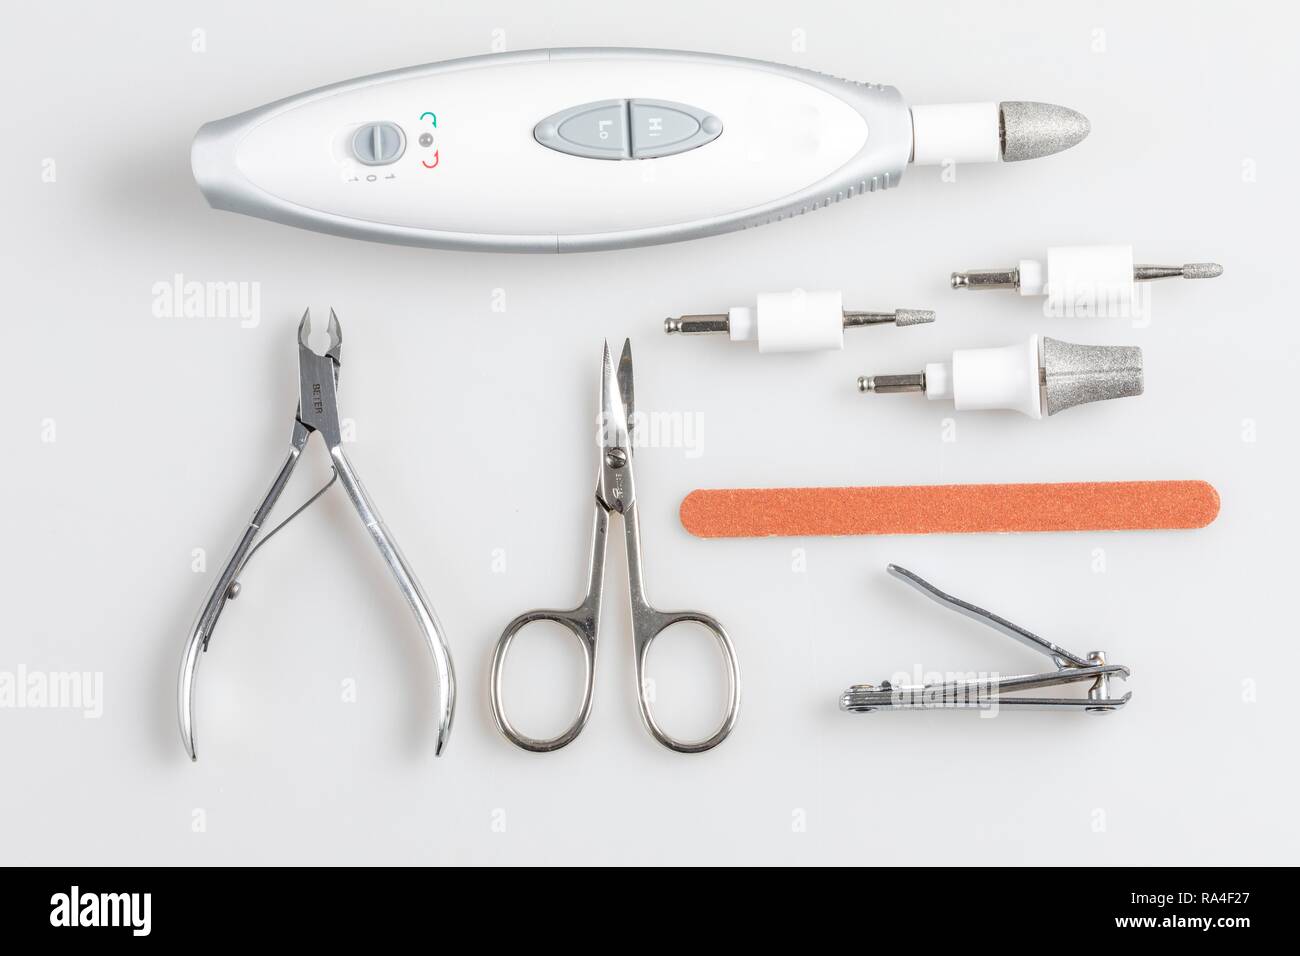 Nail Care Tools, Nagelknipser, Nagelschere, Nagel Zange, elektrische Nagelfeile mit verschiedenen Schleifköpfe Stockfoto